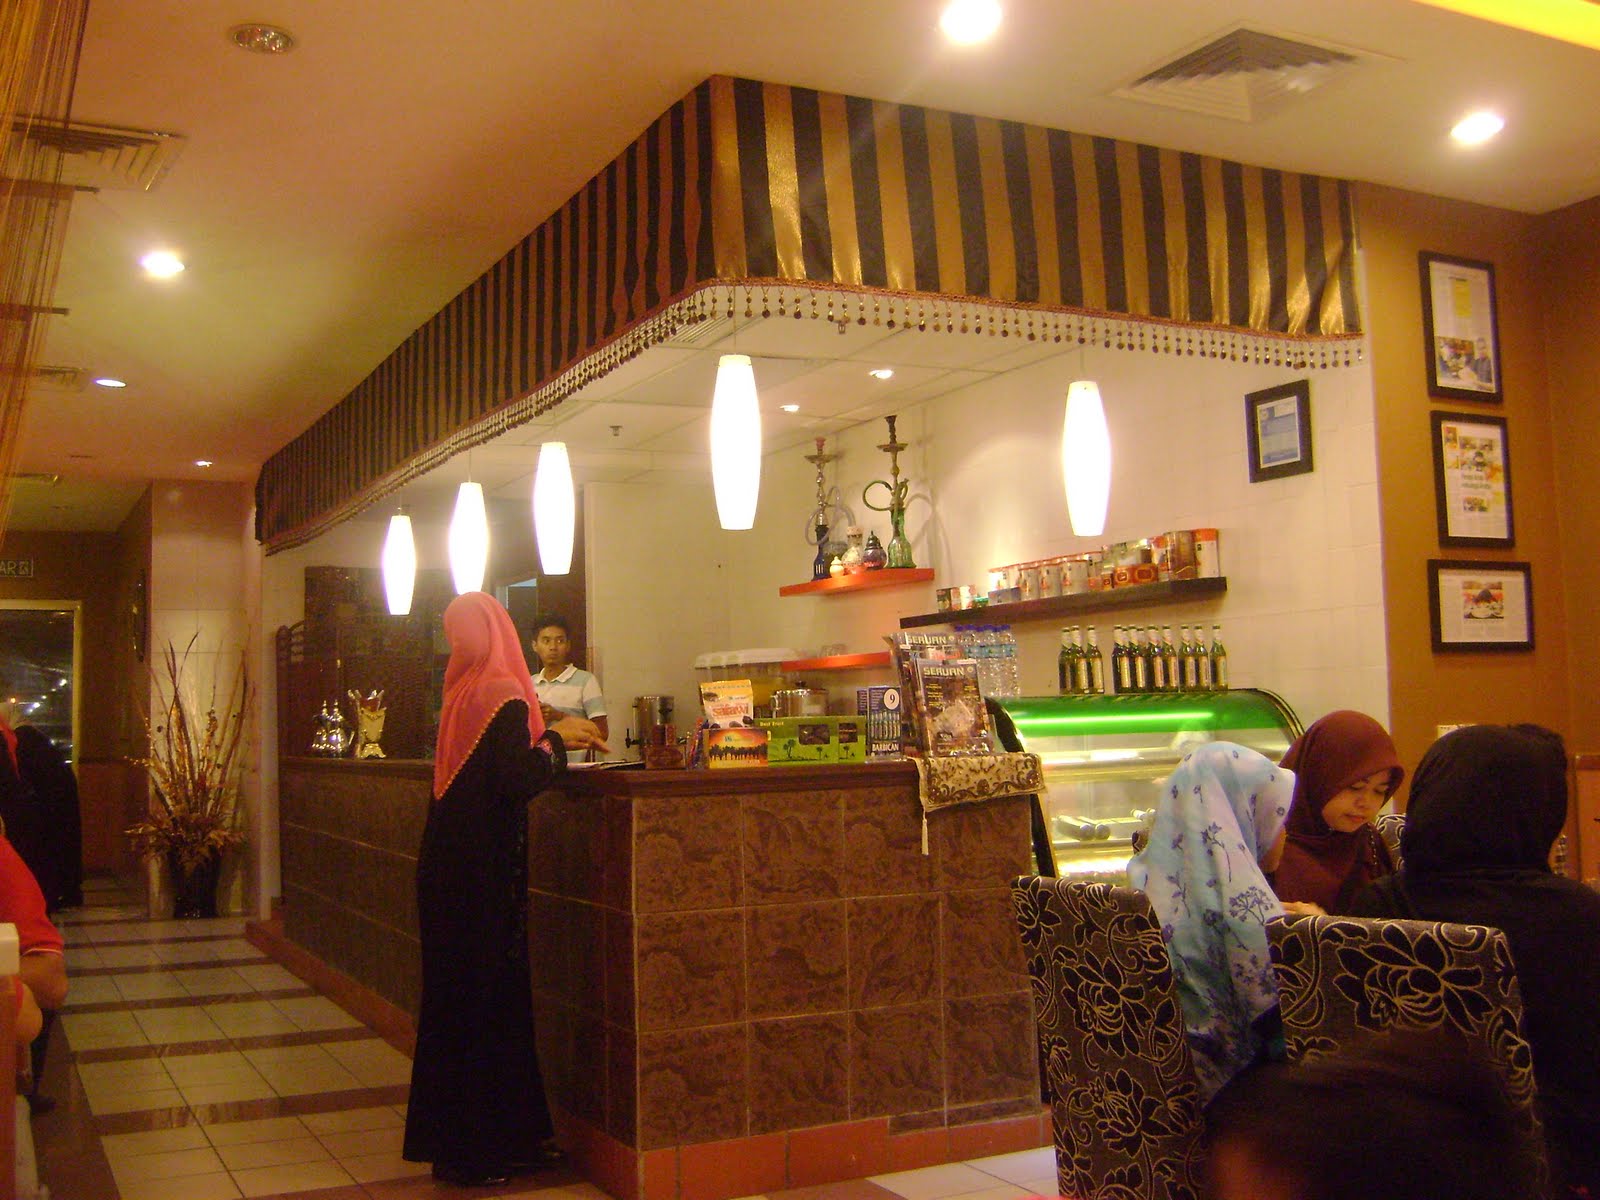 Aishah megahasz: Restoran Al-Araby, Tesco Extra Seberang Jaya